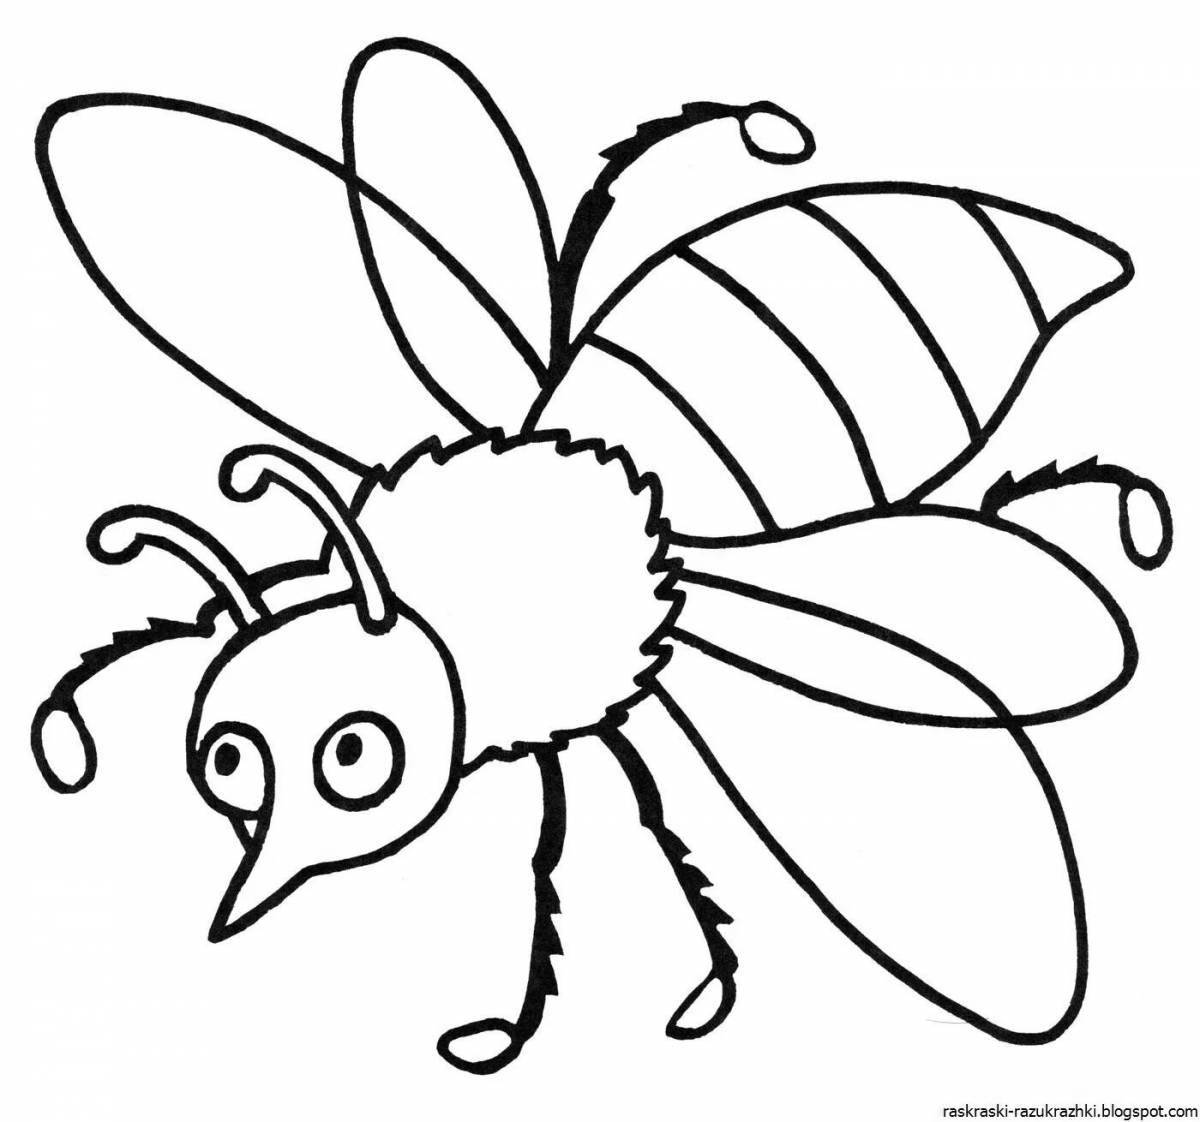 Яркие раскраски насекомых для детей 5-6 лет